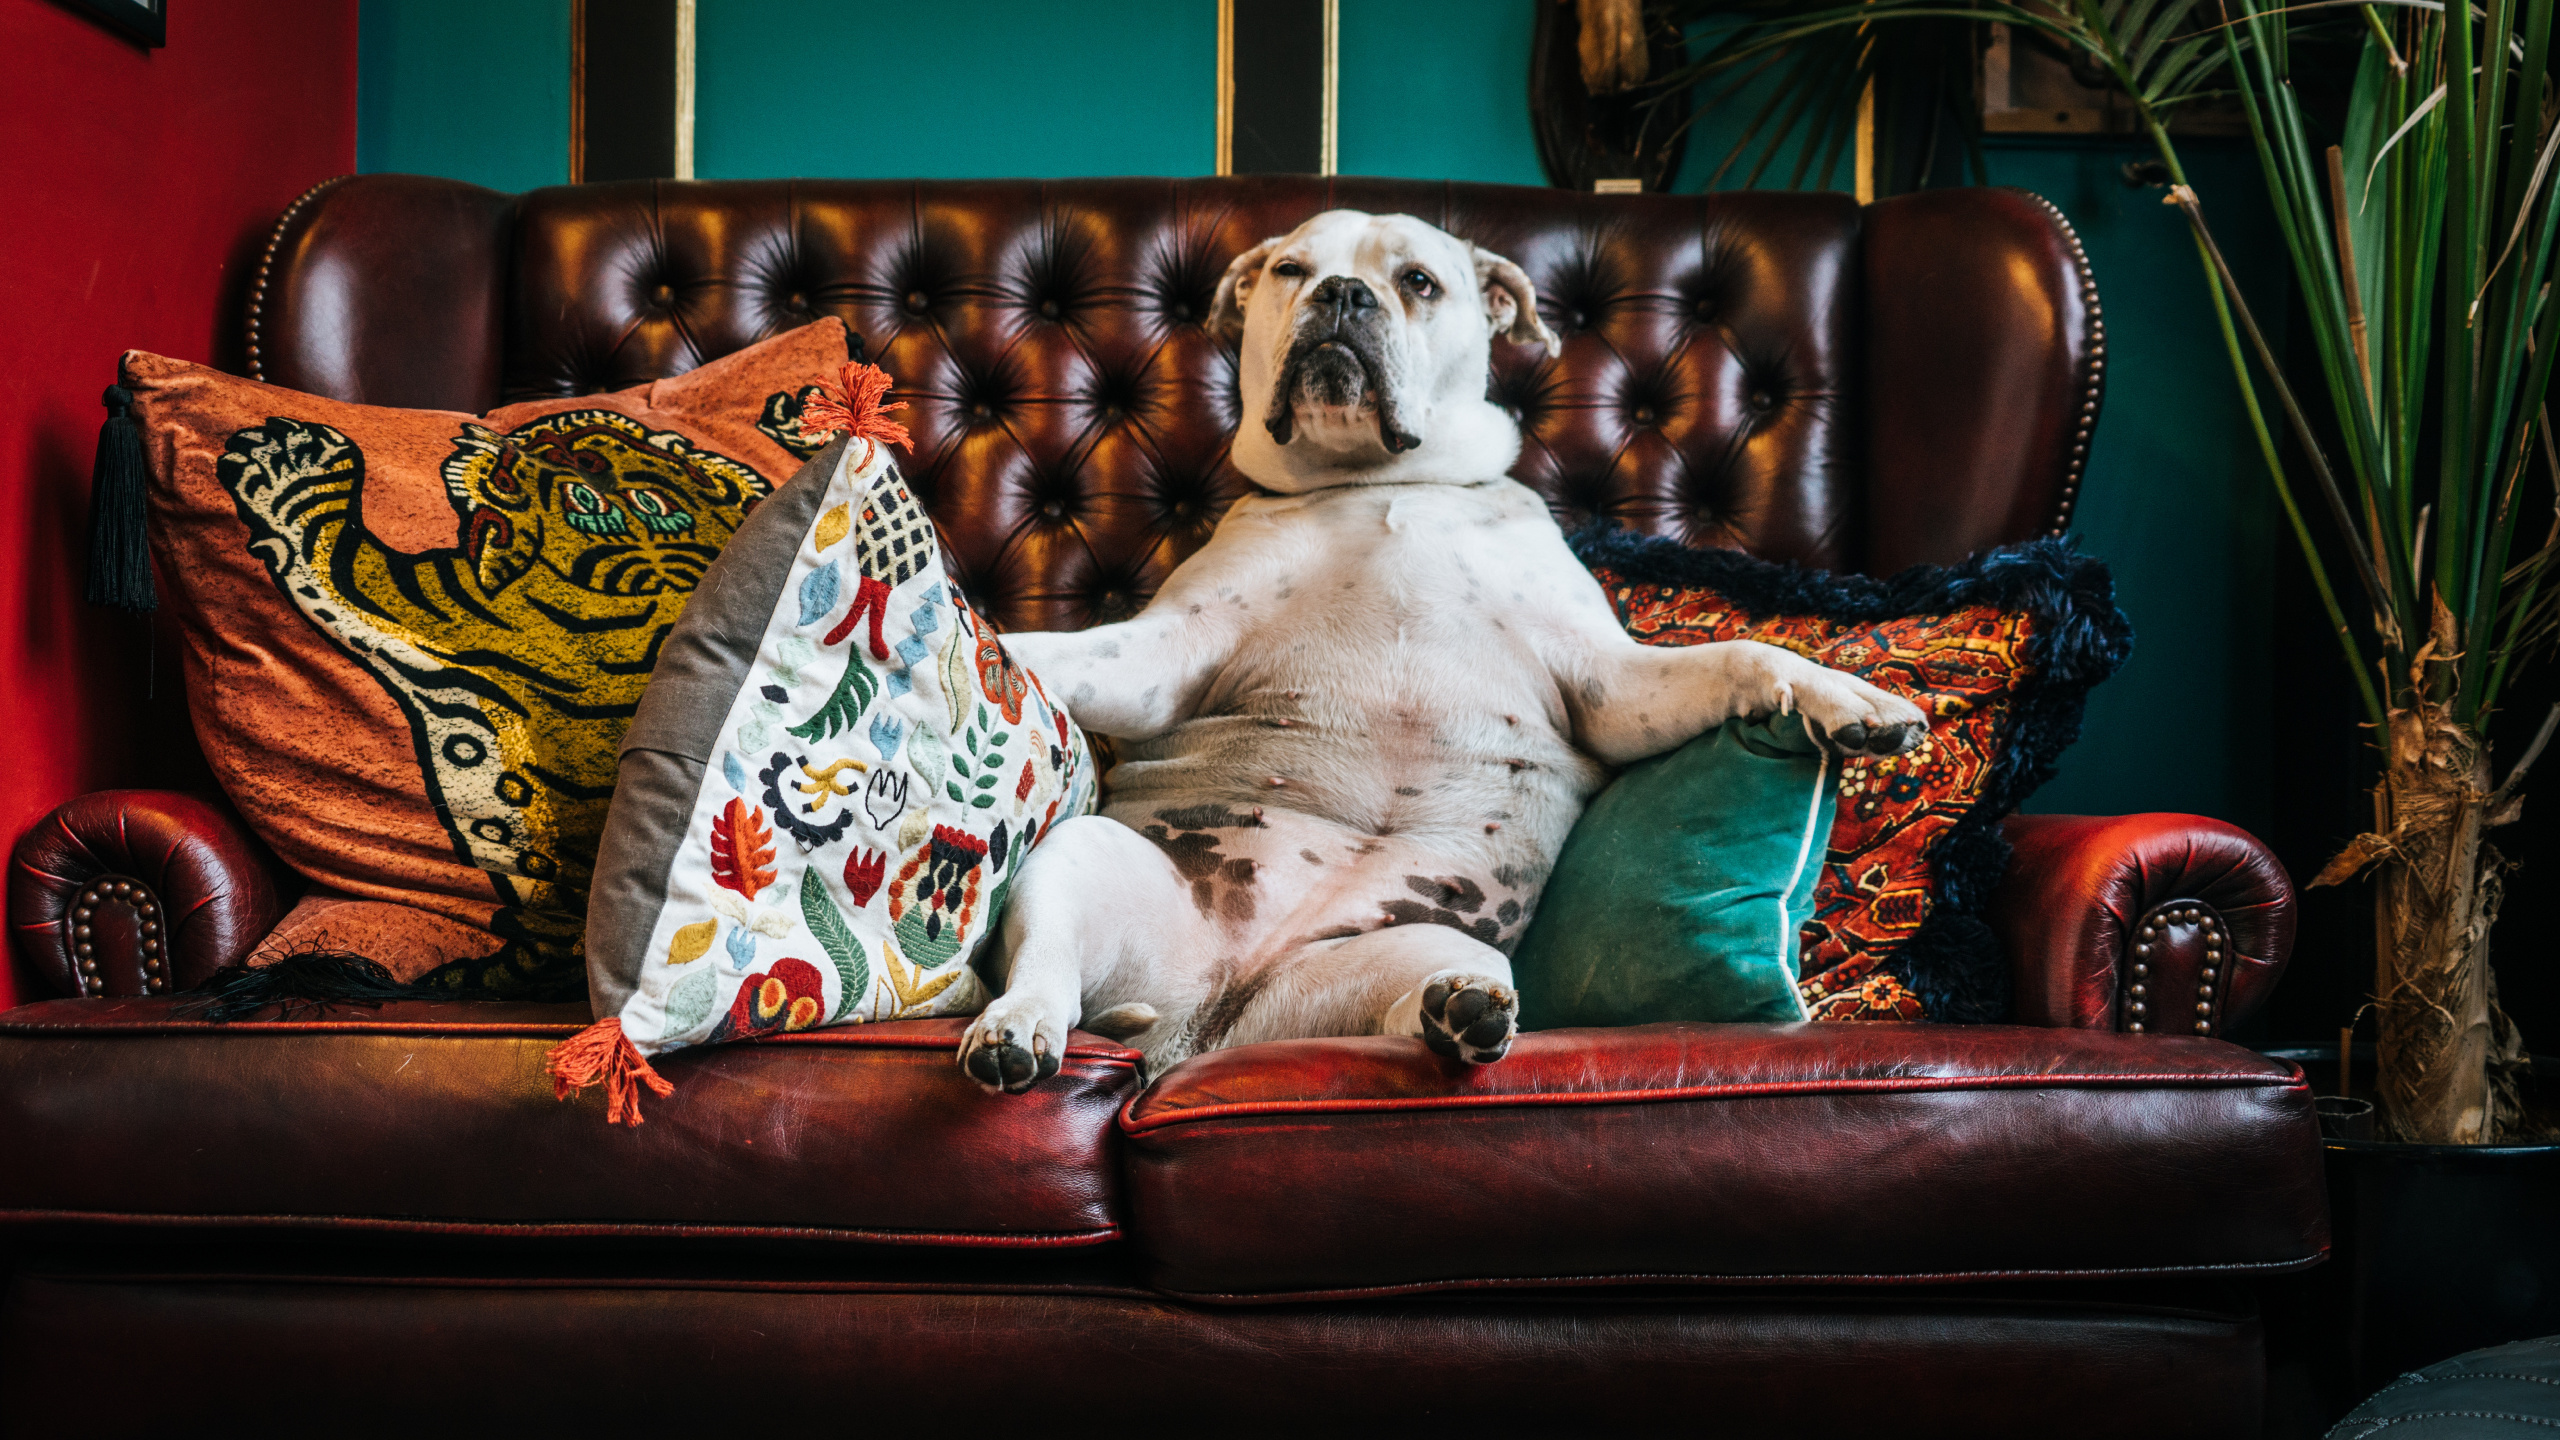 皮带, 小狗, 品种的狗, 体育组, 沙发上 壁纸 2560x1440 允许